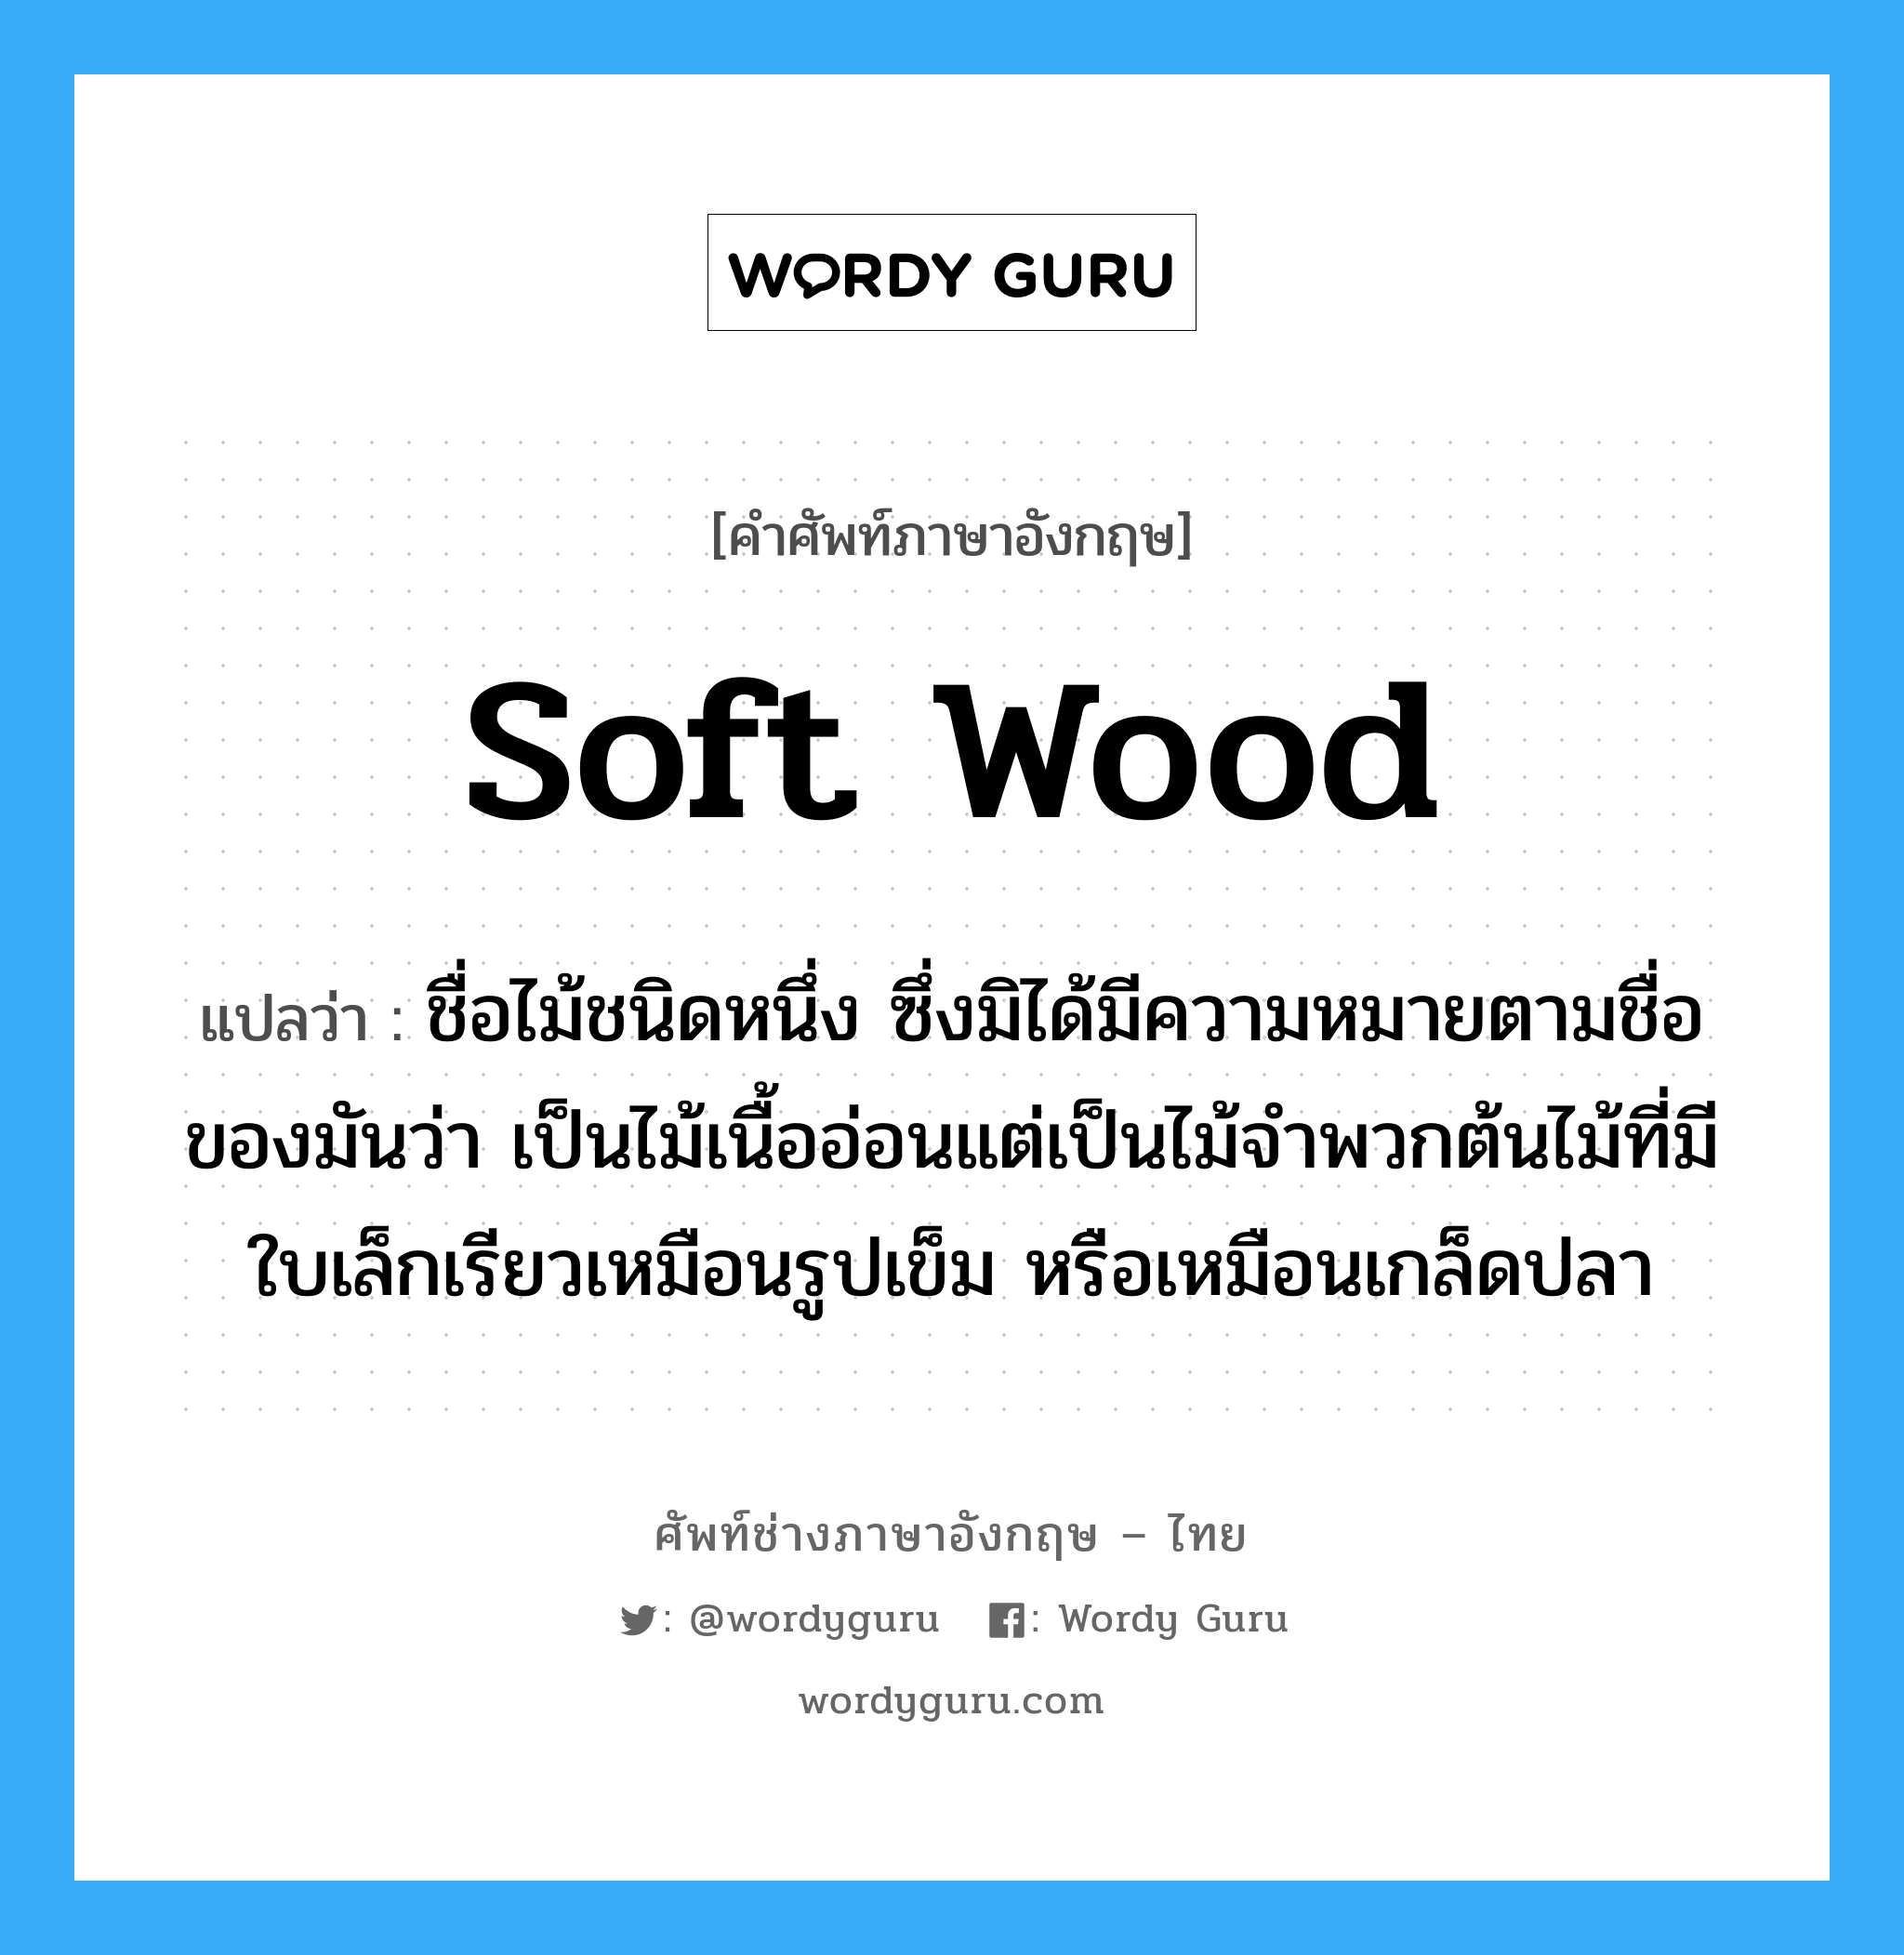 soft wood แปลว่า?, คำศัพท์ช่างภาษาอังกฤษ - ไทย soft wood คำศัพท์ภาษาอังกฤษ soft wood แปลว่า ชื่อไม้ชนิดหนึ่ง ซึ่งมิได้มีความหมายตามชื่อของมันว่า เป็นไม้เนื้ออ่อนแต่เป็นไม้จำพวกต้นไม้ที่มีใบเล็กเรียวเหมือนรูปเข็ม หรือเหมือนเกล็ดปลา